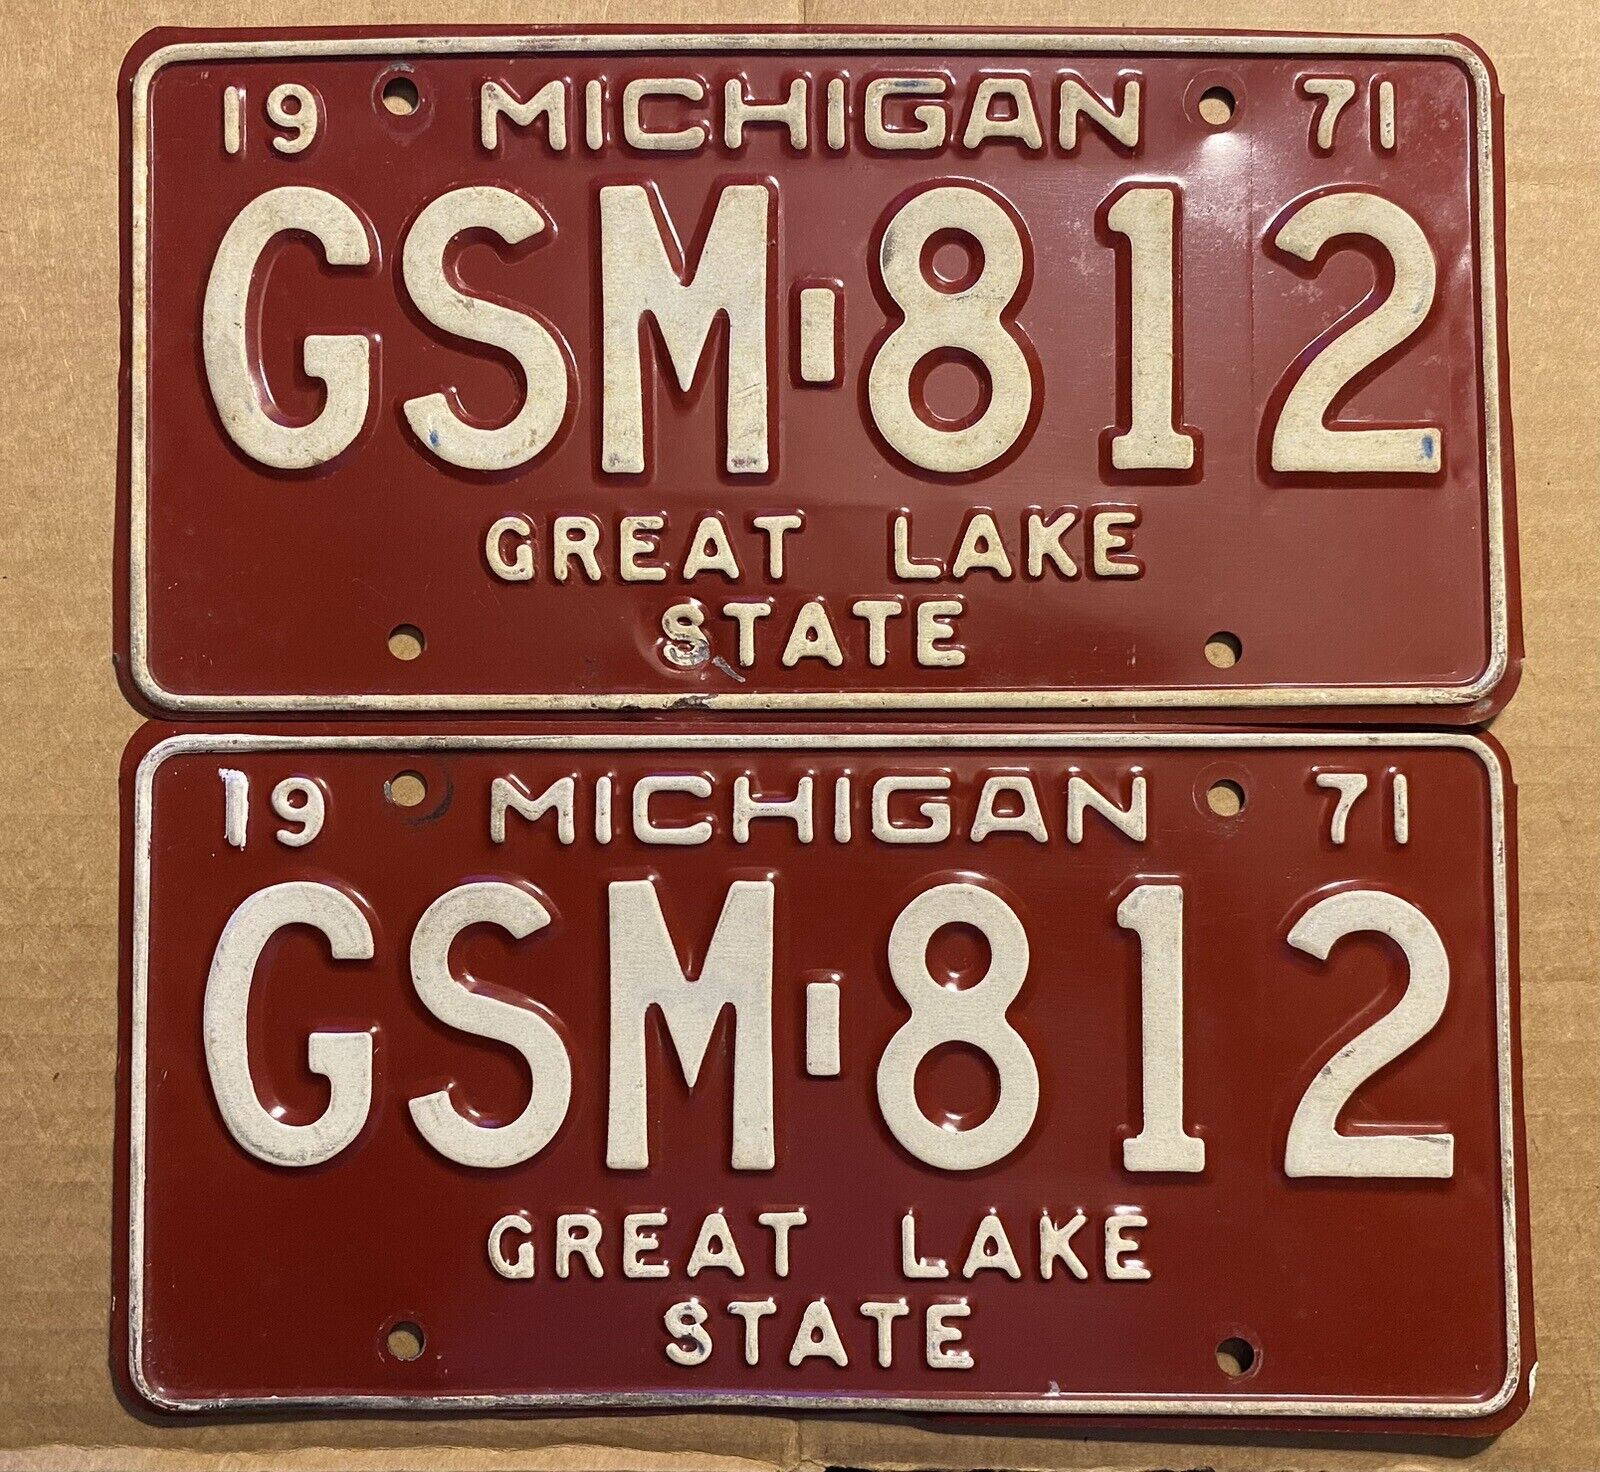 1971 Michigan license plates - original pair